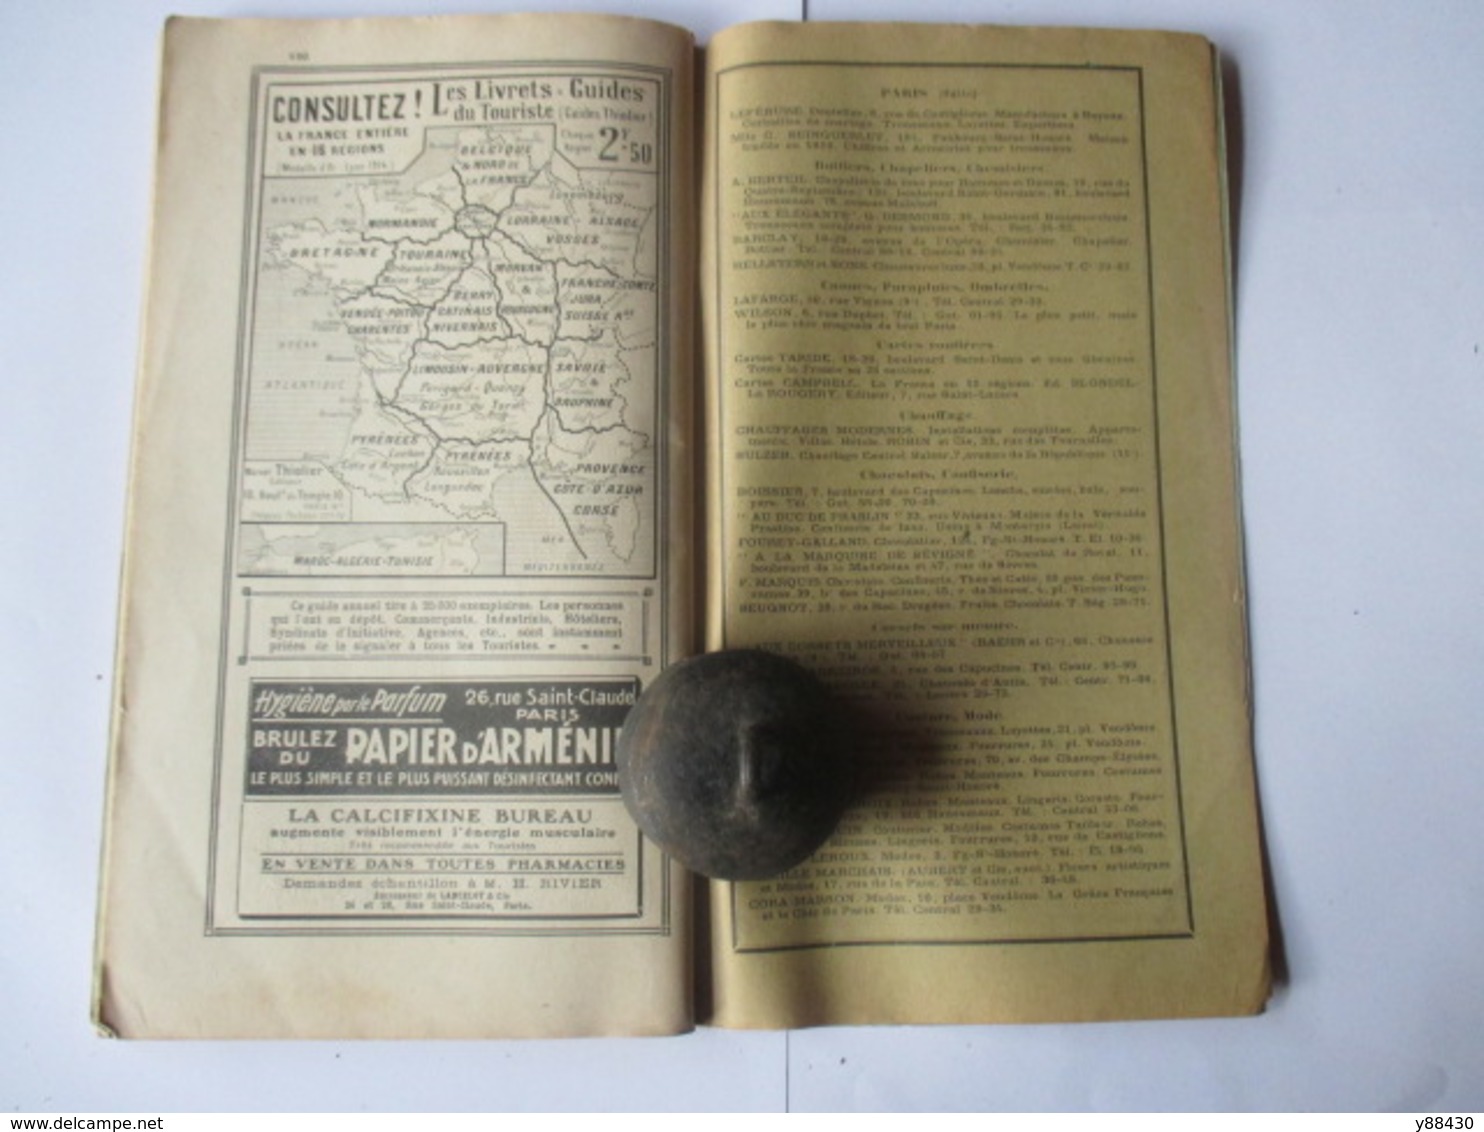 Livret Guides du Touriste THIOLIER de 1923 - LUXEMBOURG / LORRAINE / ALSACE / VOSGES  - 124 pages - 25 photos